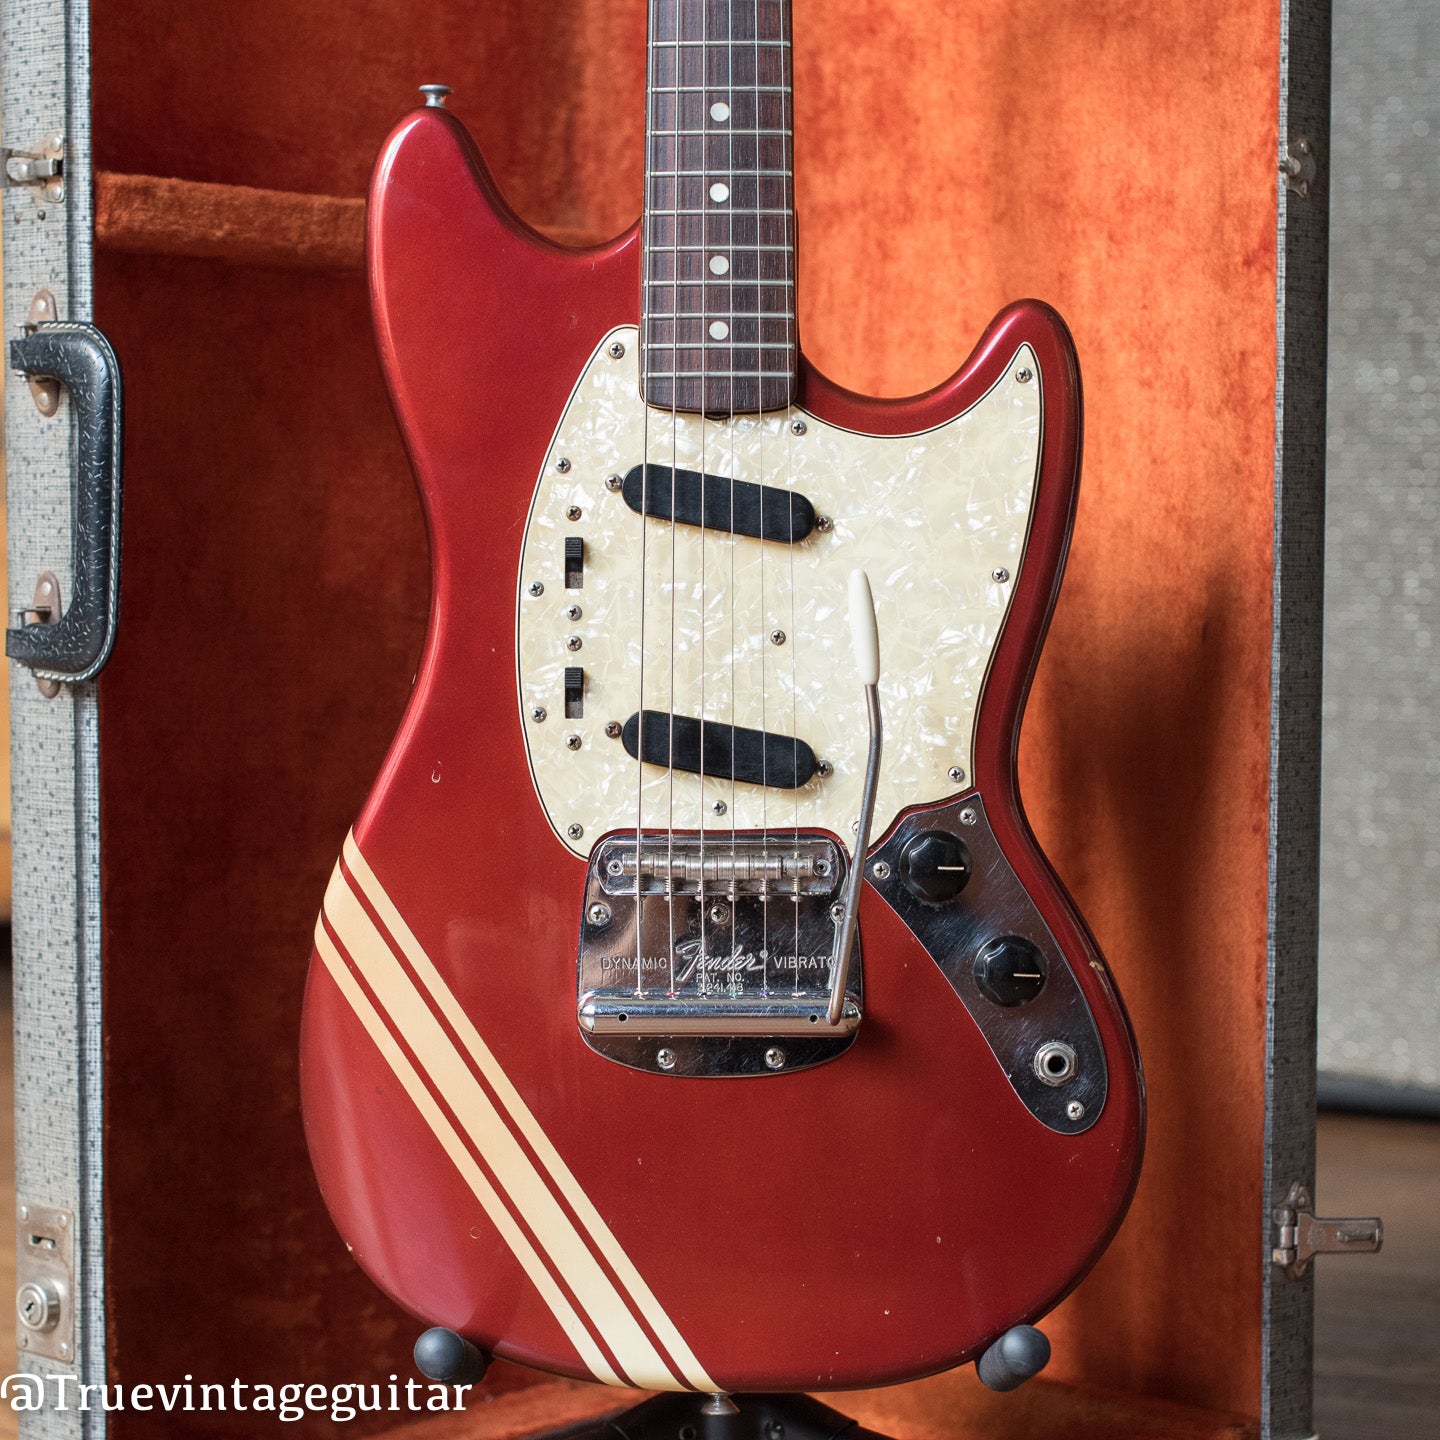 1969 Fender Mustang red finish white stripes